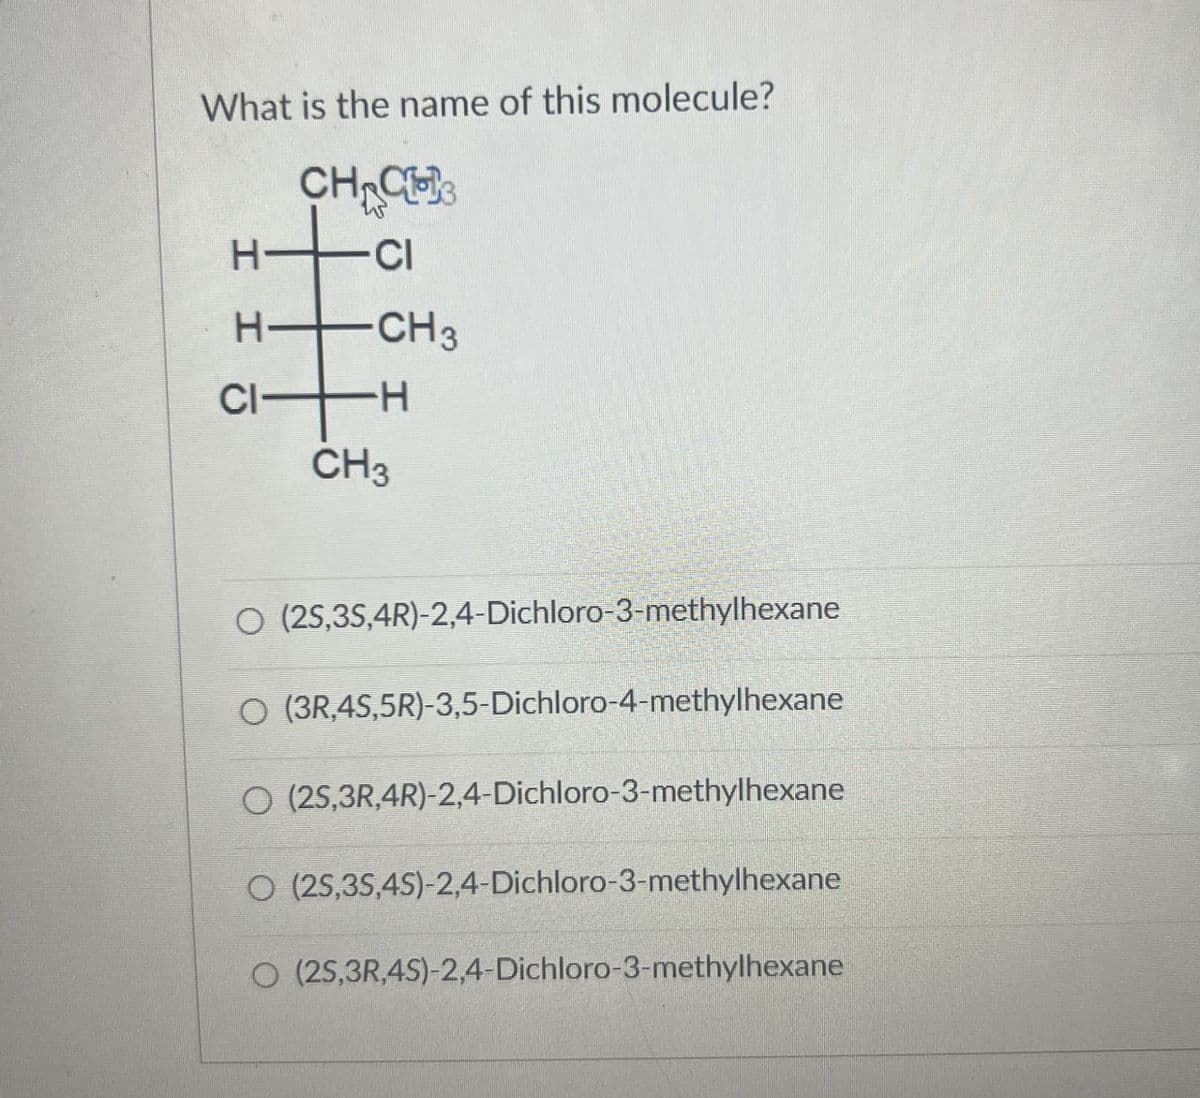 What is the name of this molecule?
H-
HHC
-15
CH CH
CI
CH3
-H
CH3
○ (25,3S,4R)-2,4-Dichloro-3-methylhexane
○ (3R,4S,5R)-3,5-Dichloro-4-methylhexane
O (25,3R,4R)-2,4-Dichloro-3-methylhexane
O (25,35,4S)-2,4-Dichloro-3-methylhexane
O (25,3R,4S)-2,4-Dichloro-3-methylhexane